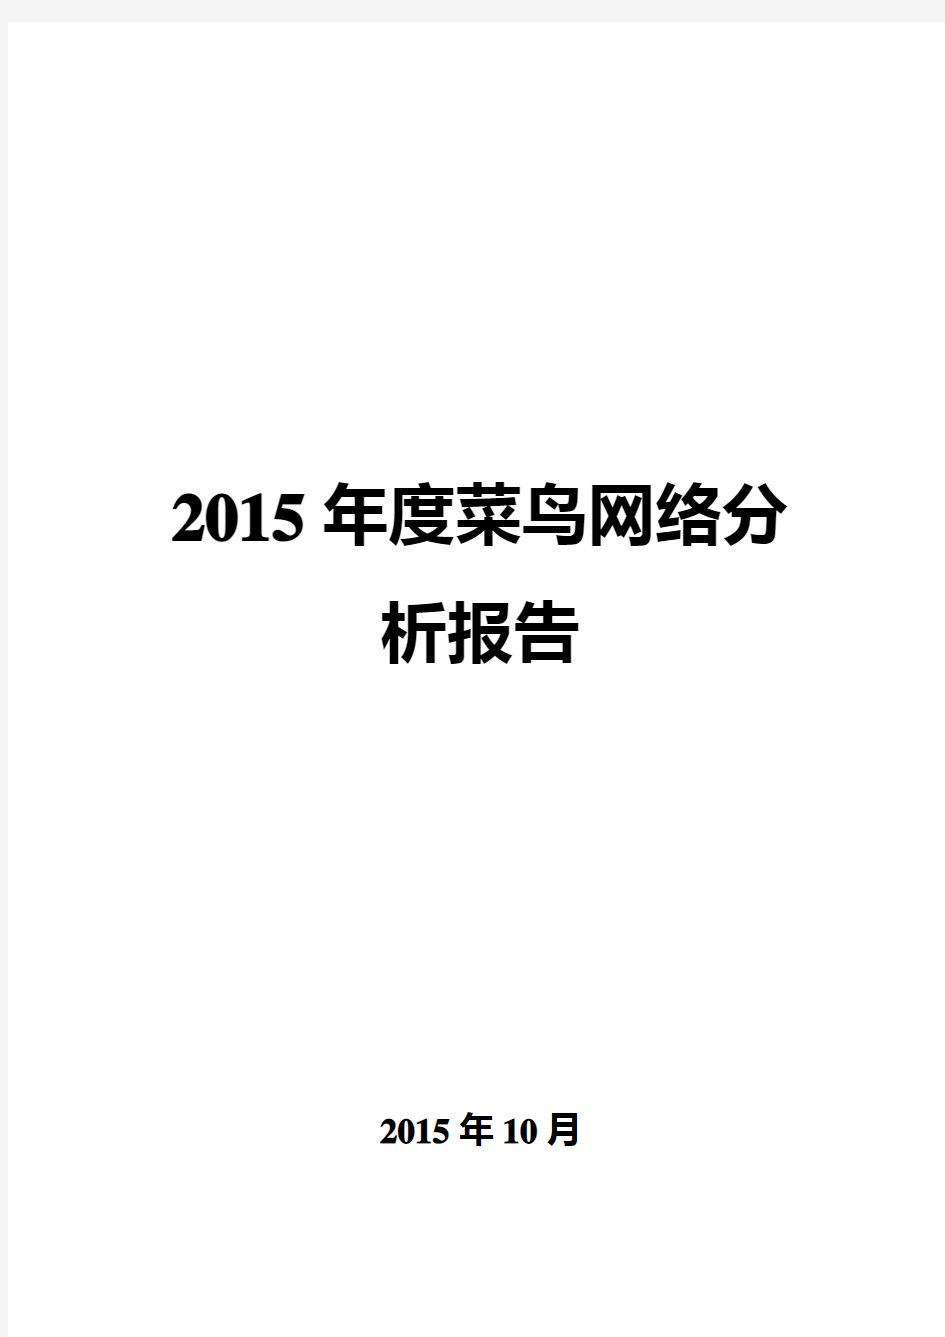 2015年度菜鸟网络分析报告